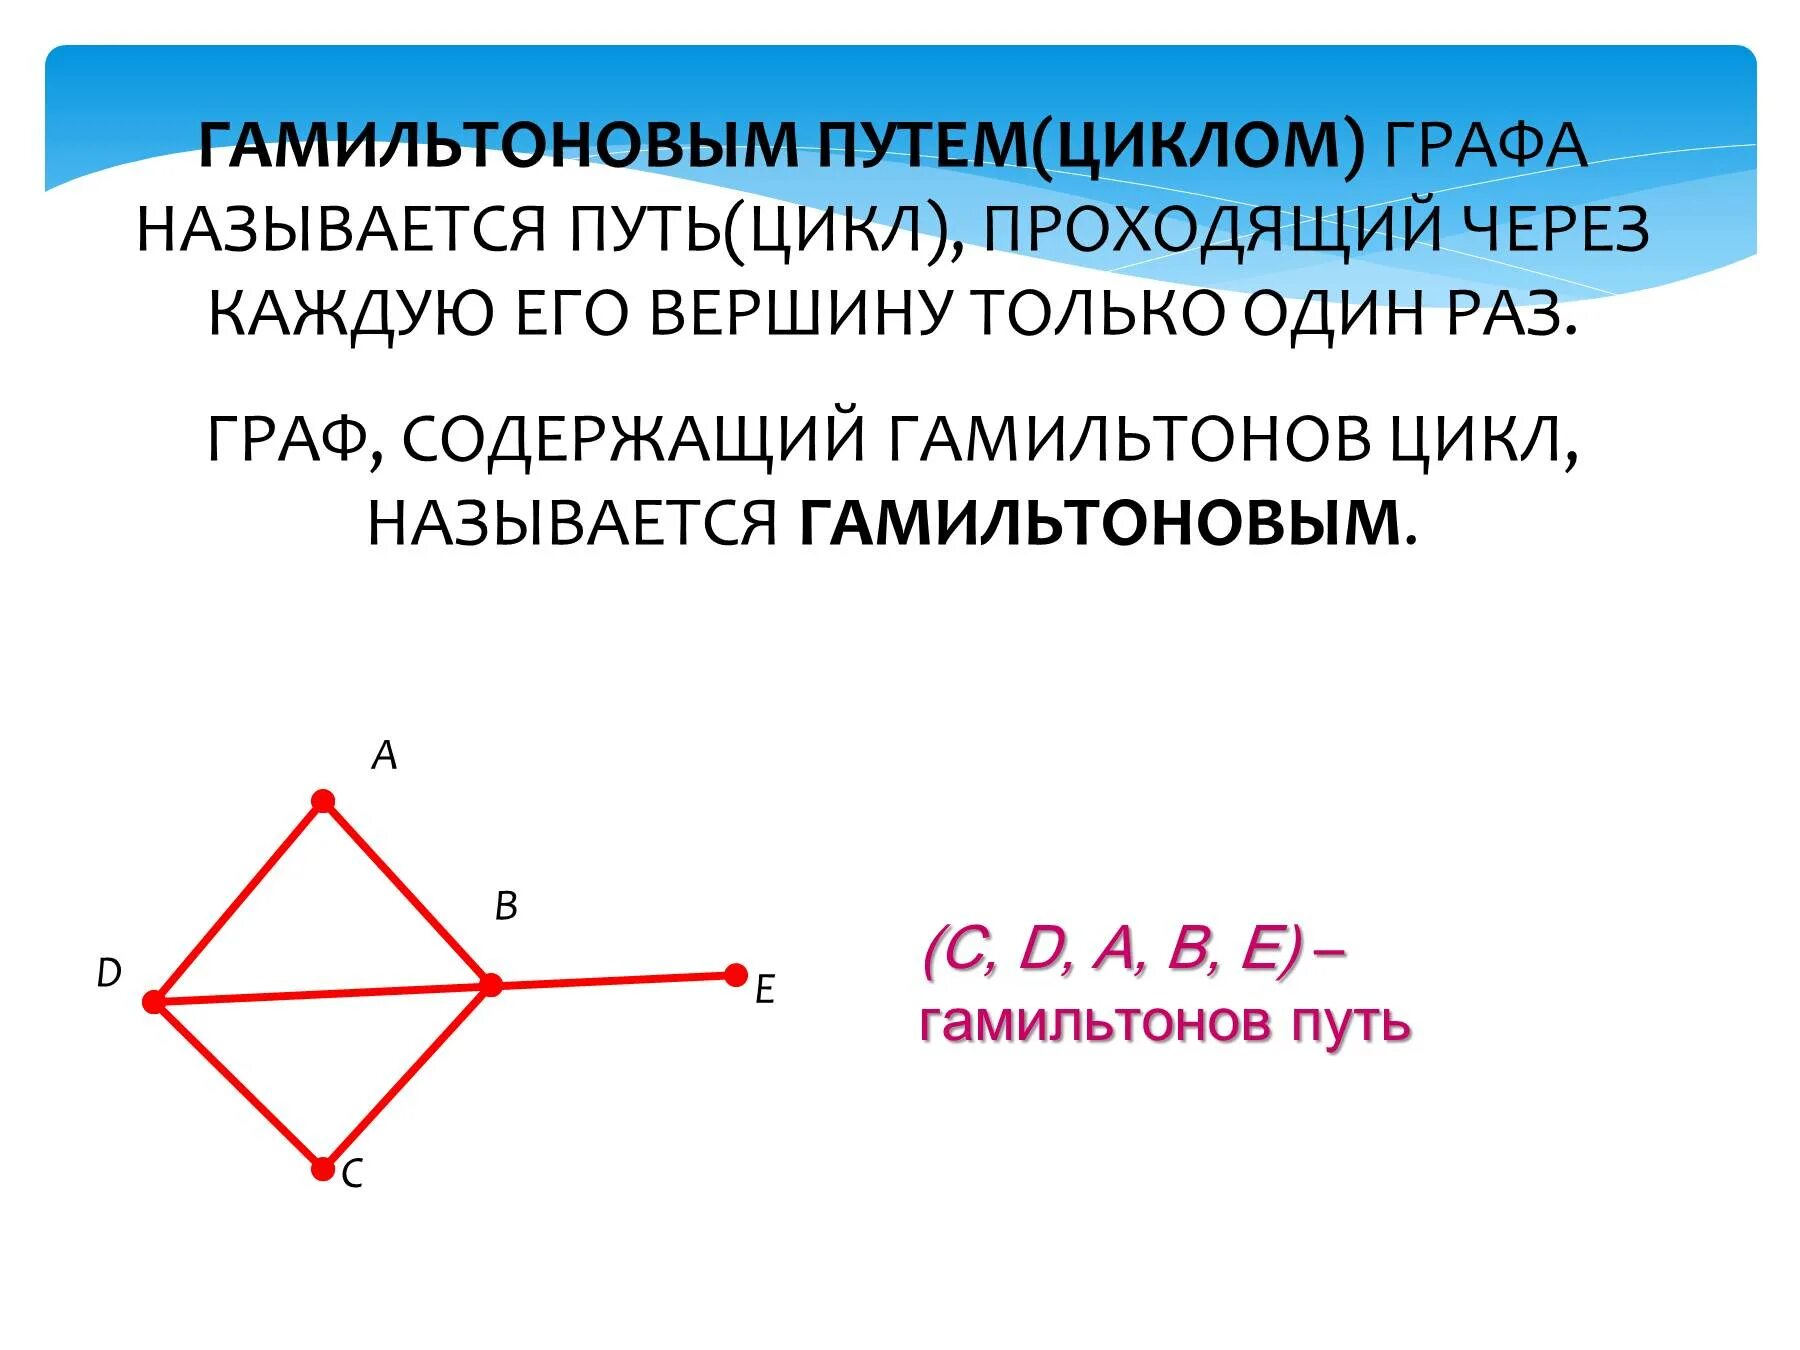 Гамильтонов цикл графа с 5 вершинами. Гамильтонов путь и гамильтонов цикл. Цикл в графе это путь у которого